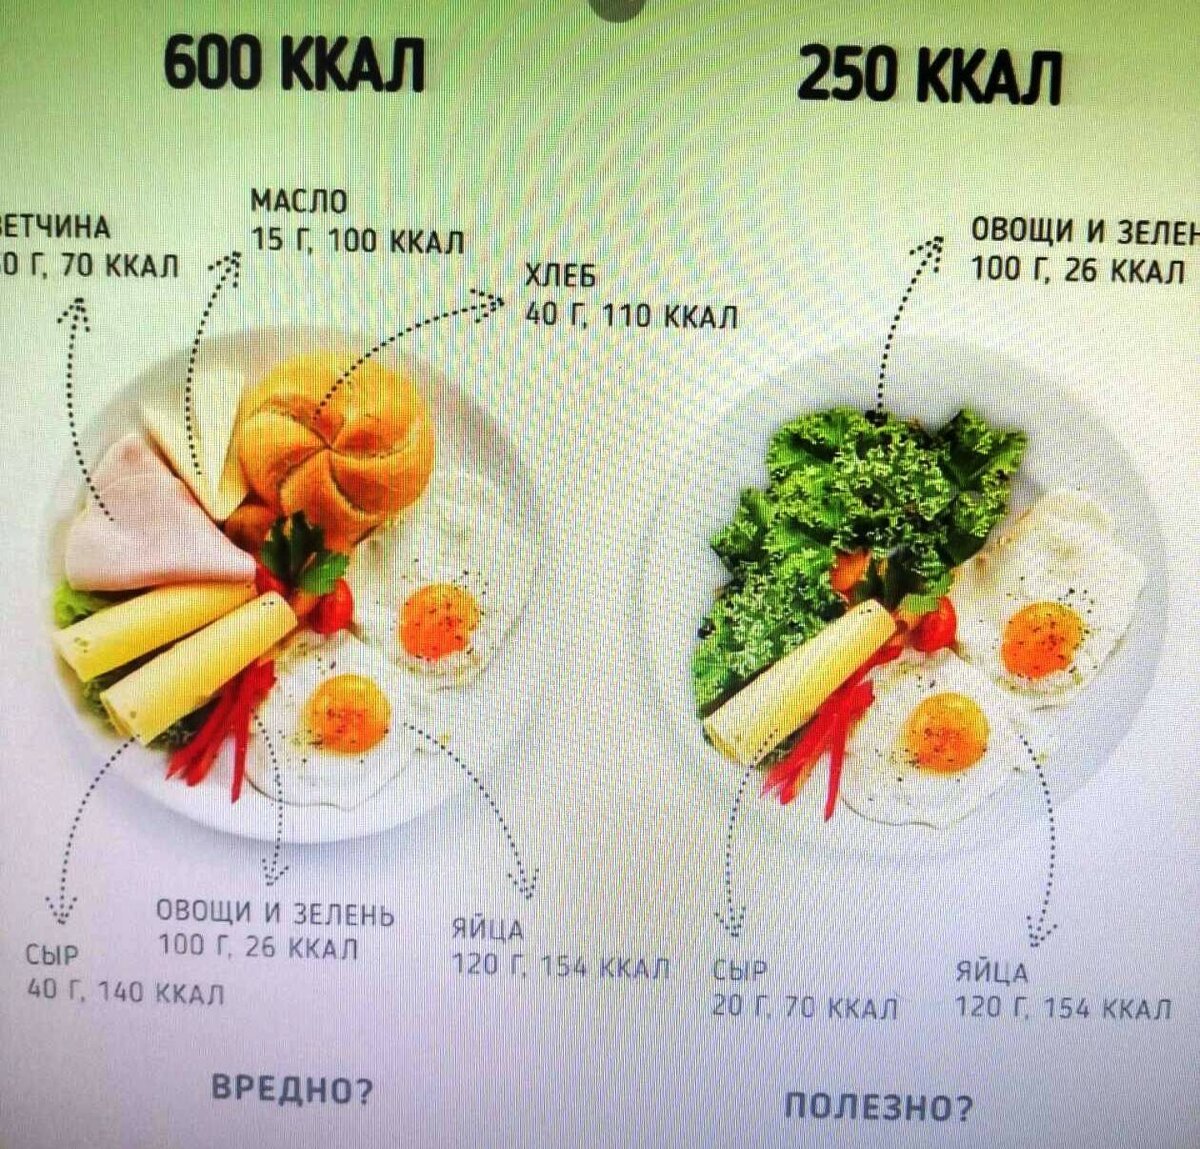 500 калорий сколько жира. 600 Калорий. Рацион на 600 калорий в день. Питание на 600 ккал. Порции пищи для похудения.